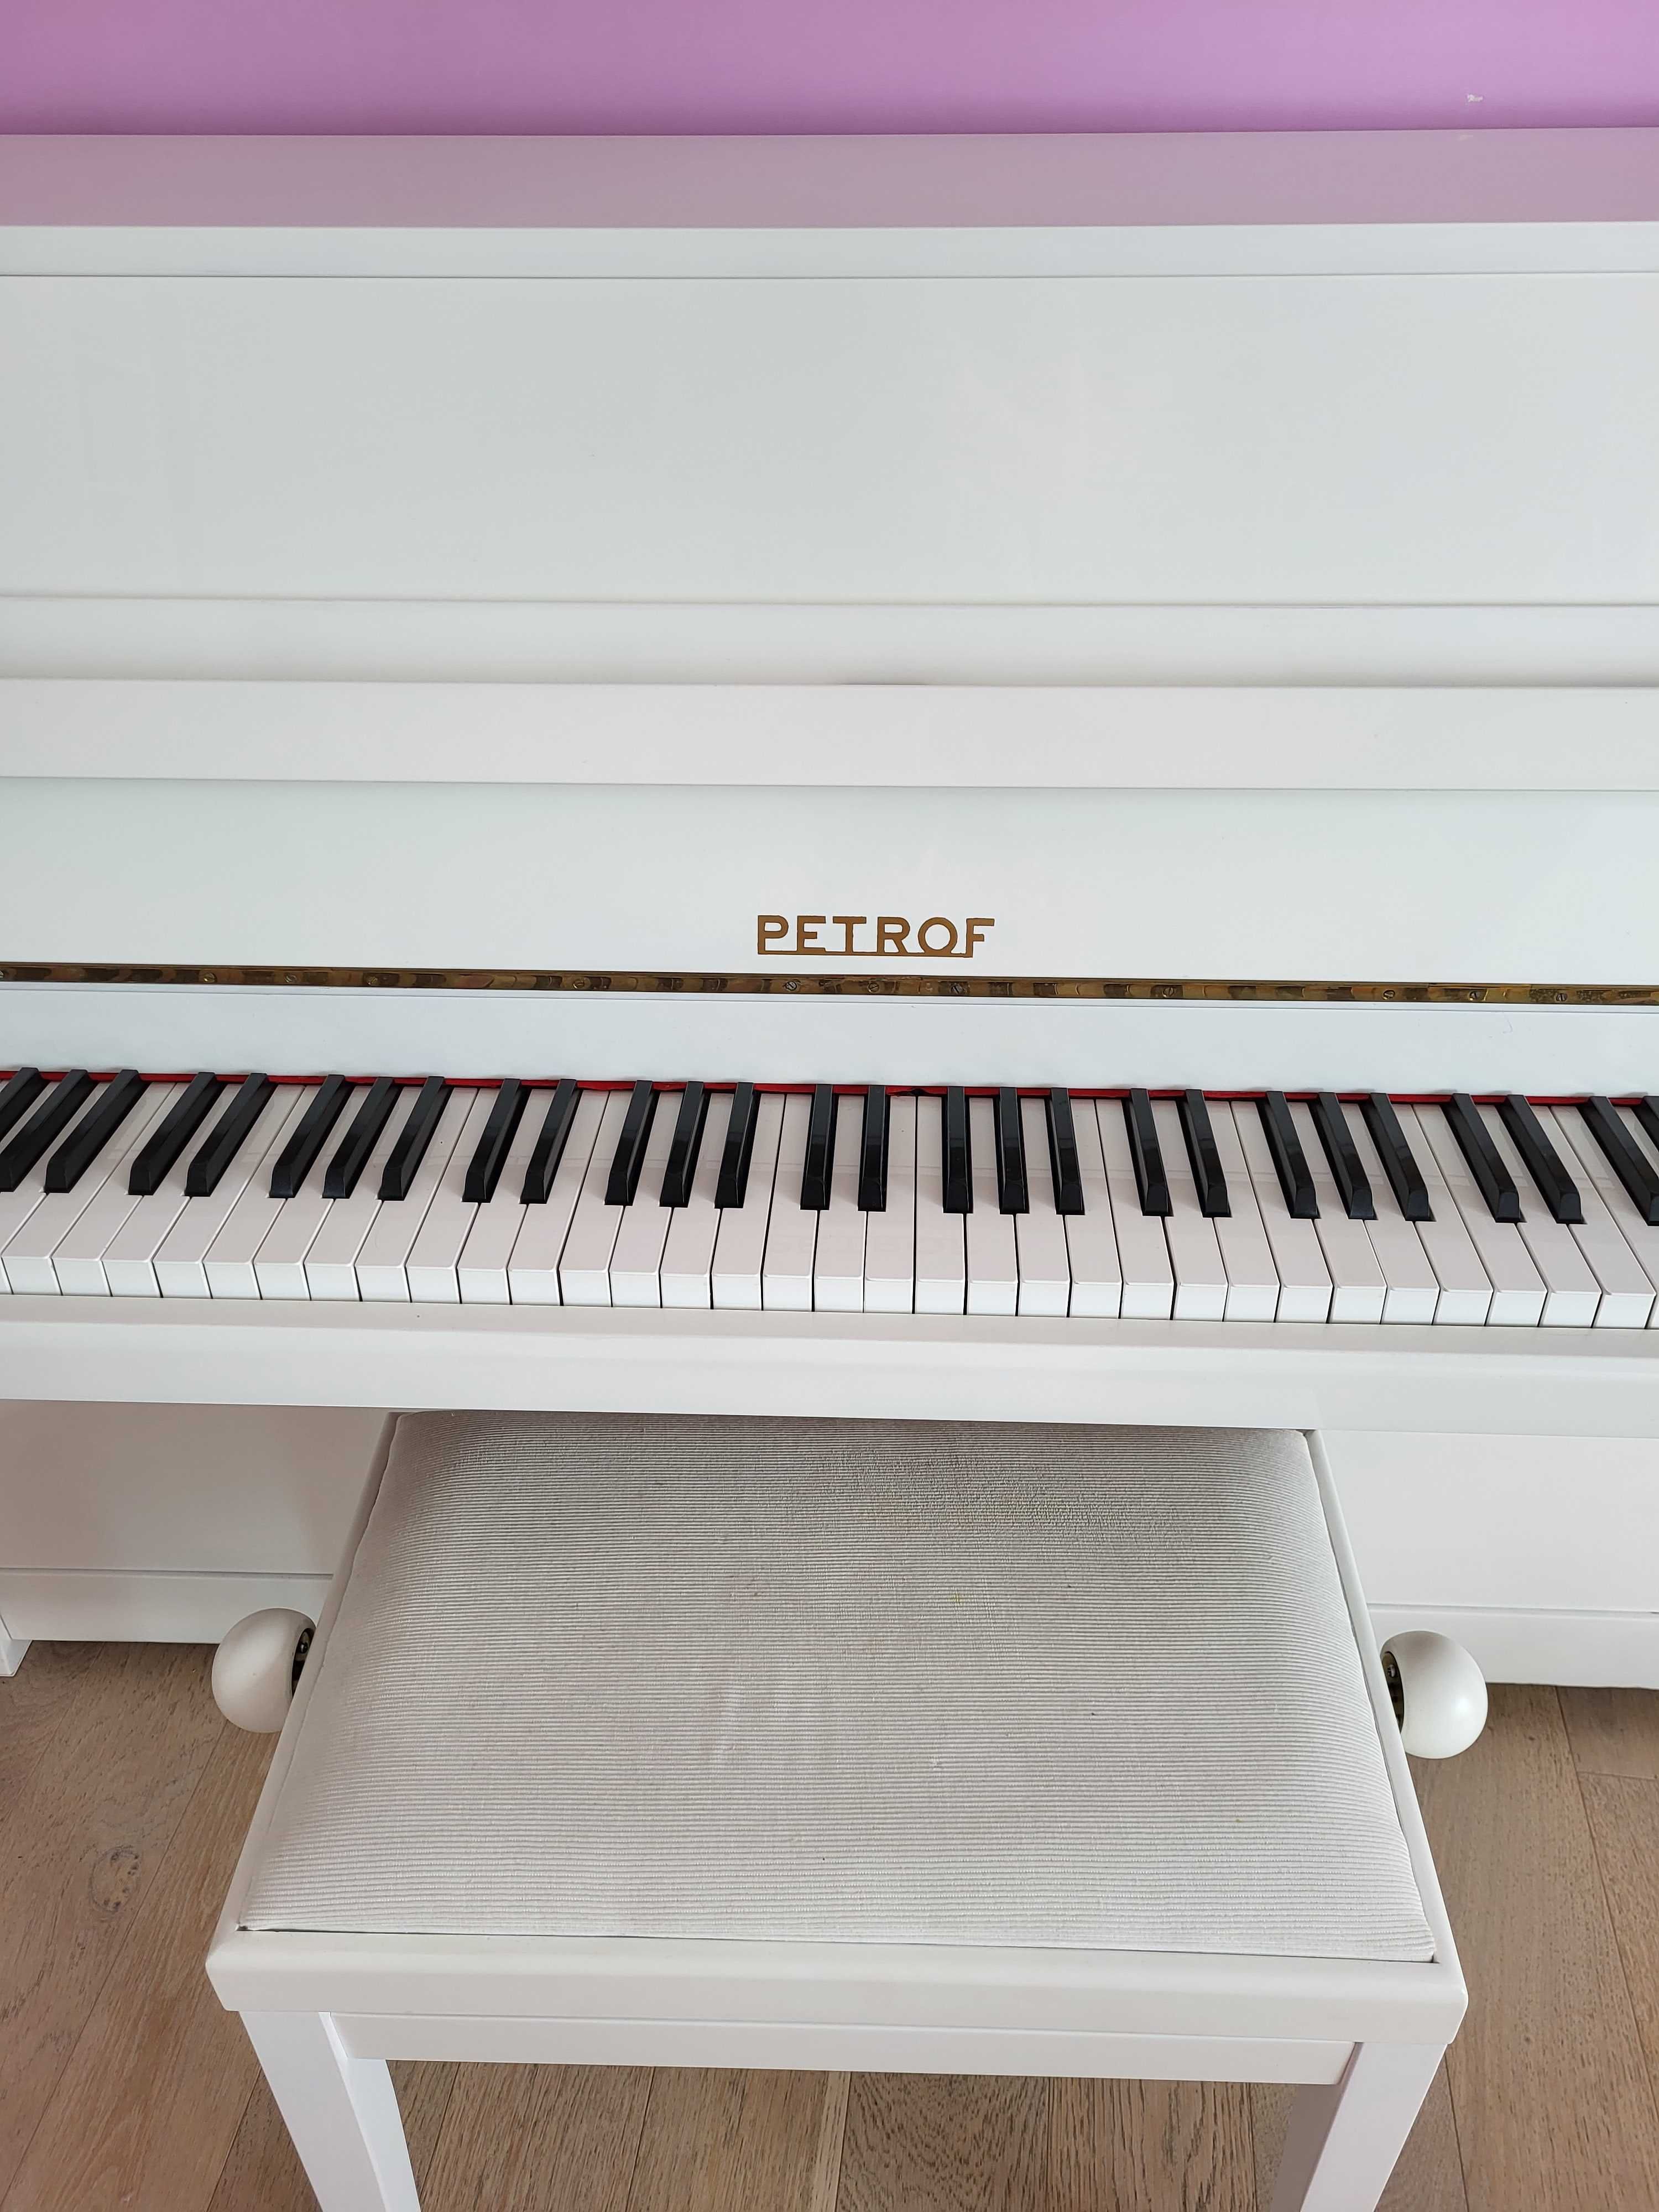 Пианино Petrof белого цвета в отличном состоянии